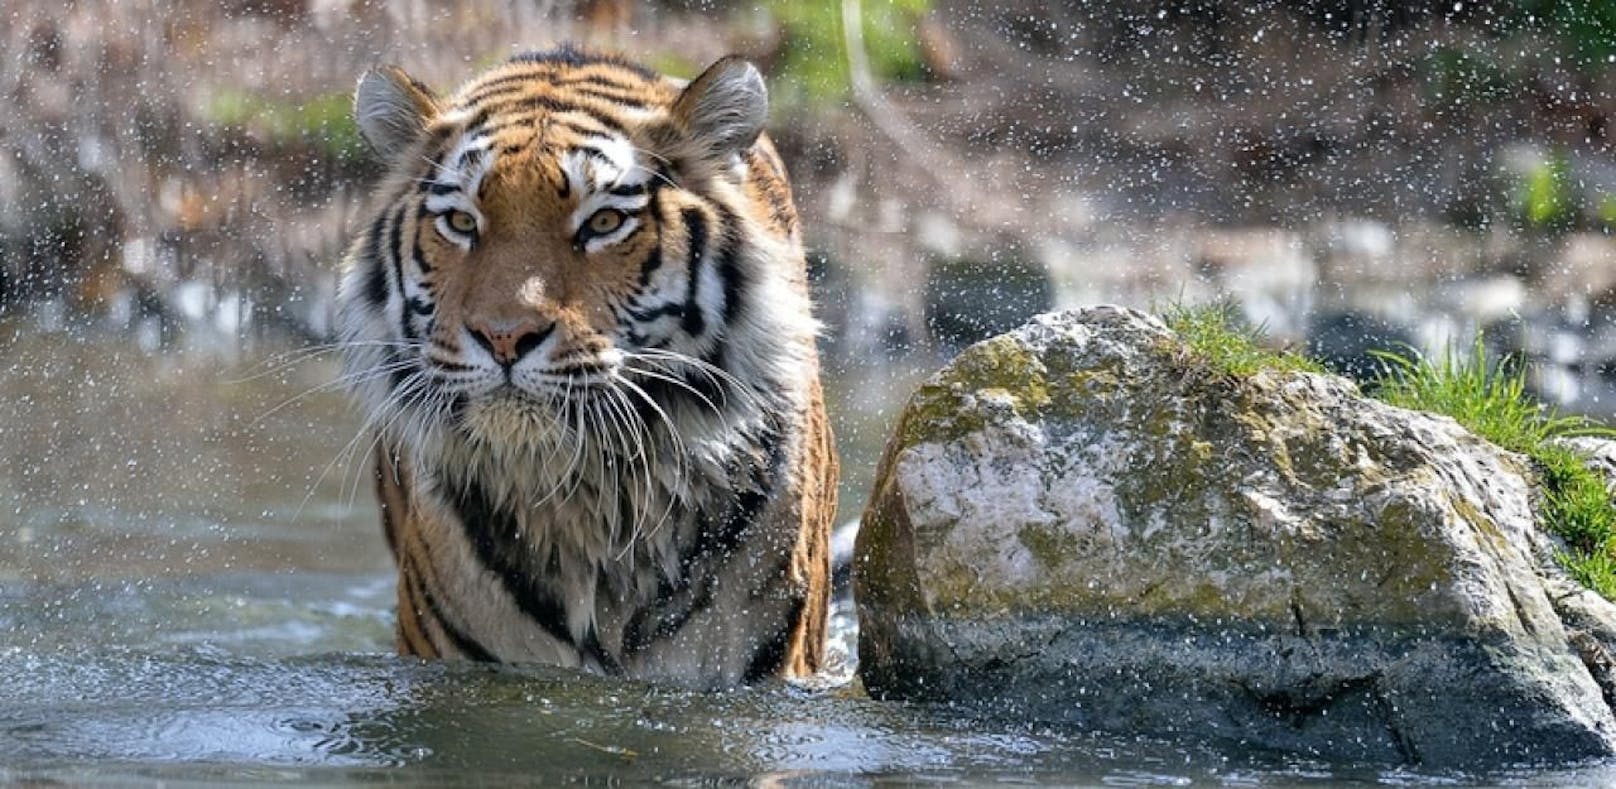 Tiger mit Zahnweh trotz Behandlung verstorben